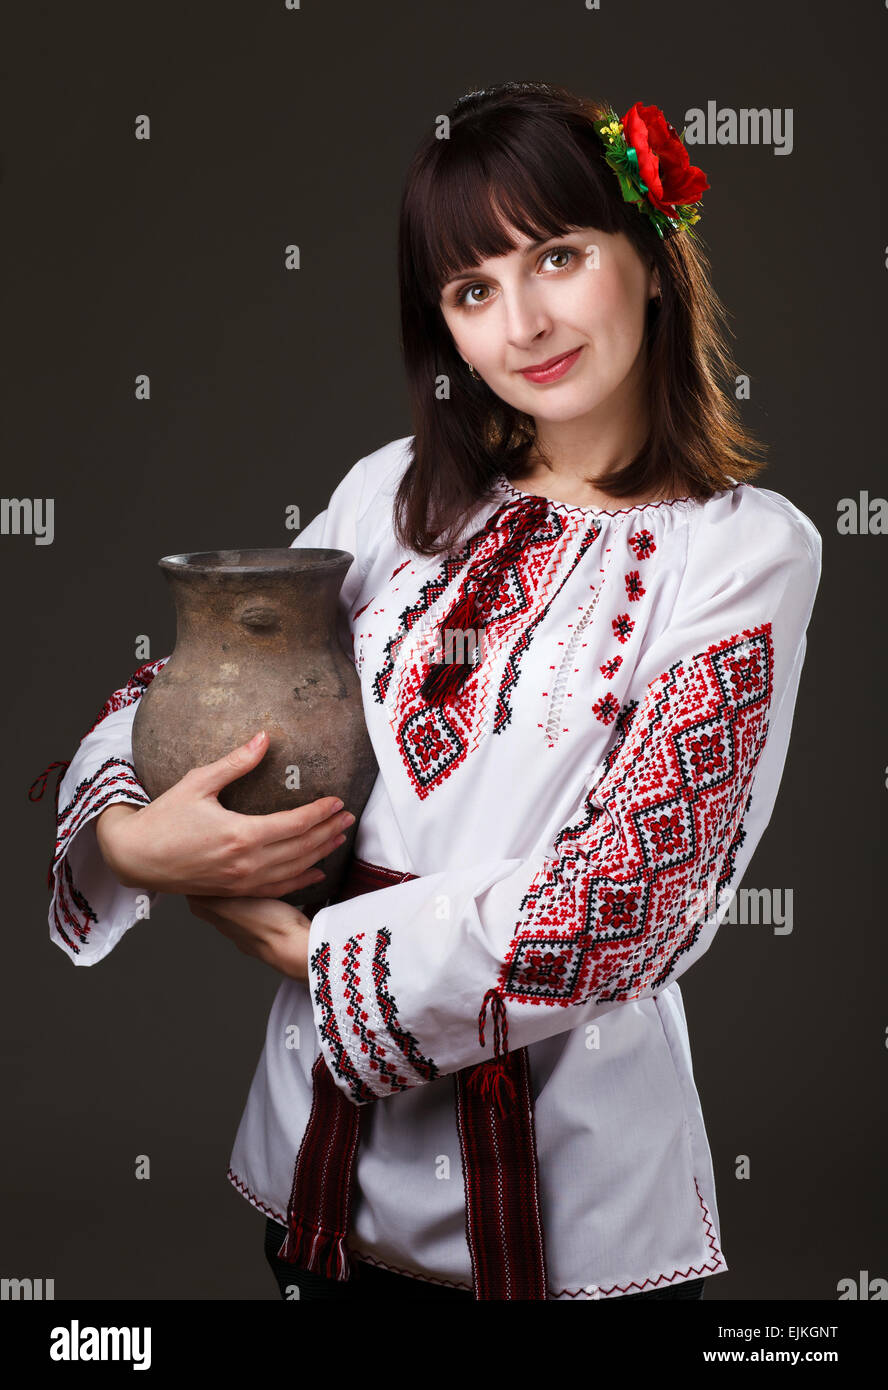 Bella donna in una camicia ricamata con una brocca nelle sue mani Foto Stock